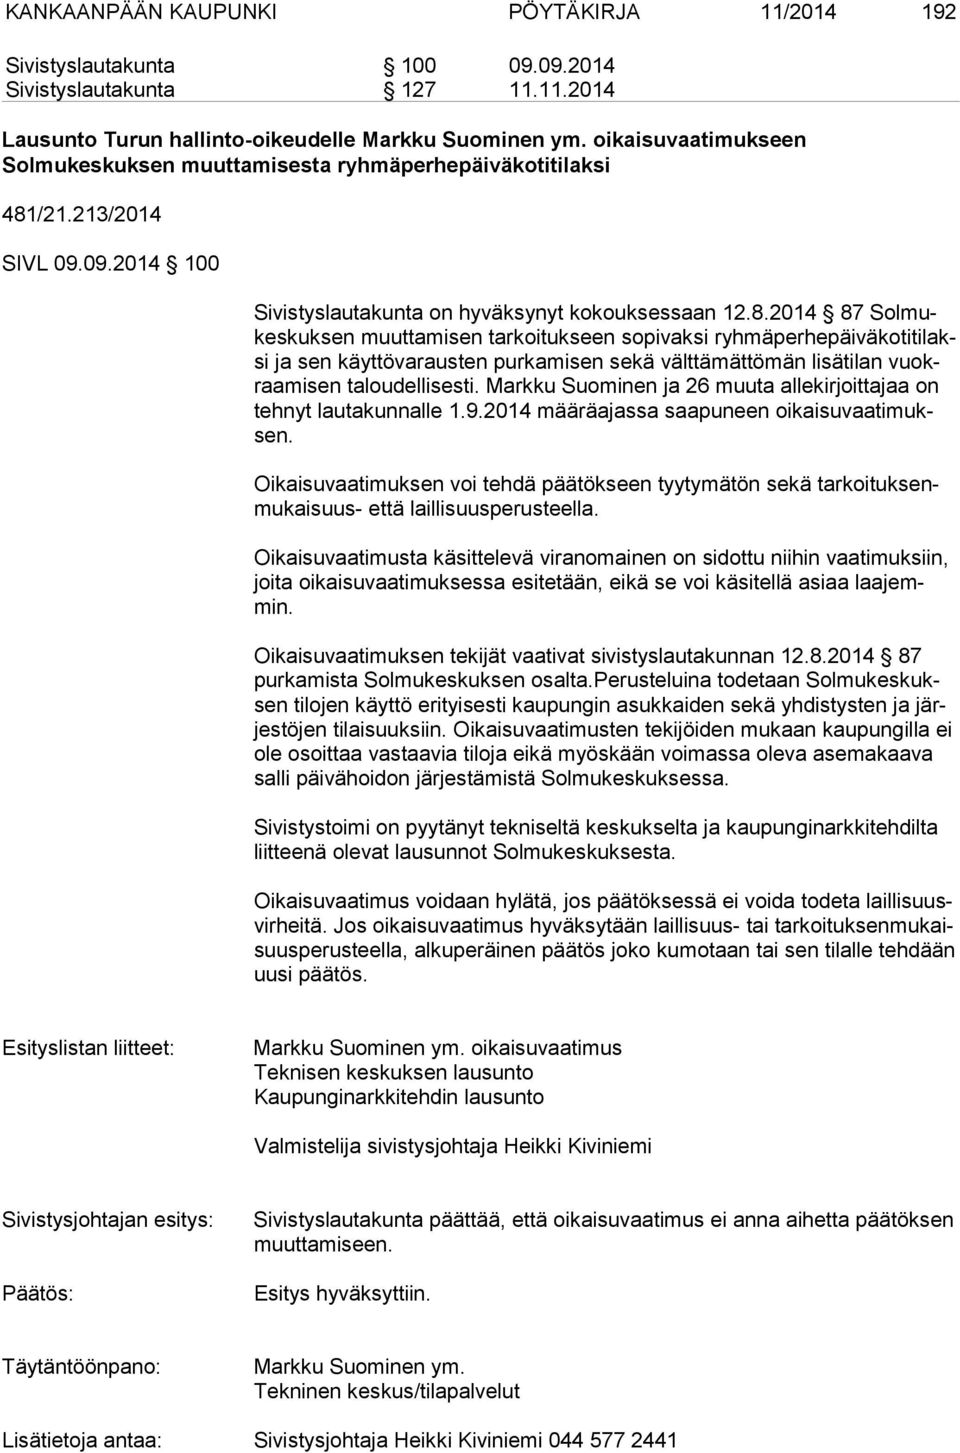 /21.213/2014 SIVL 09.09.2014 100 Sivistyslautakunta on hyväksynyt kokouksessaan 12.8.